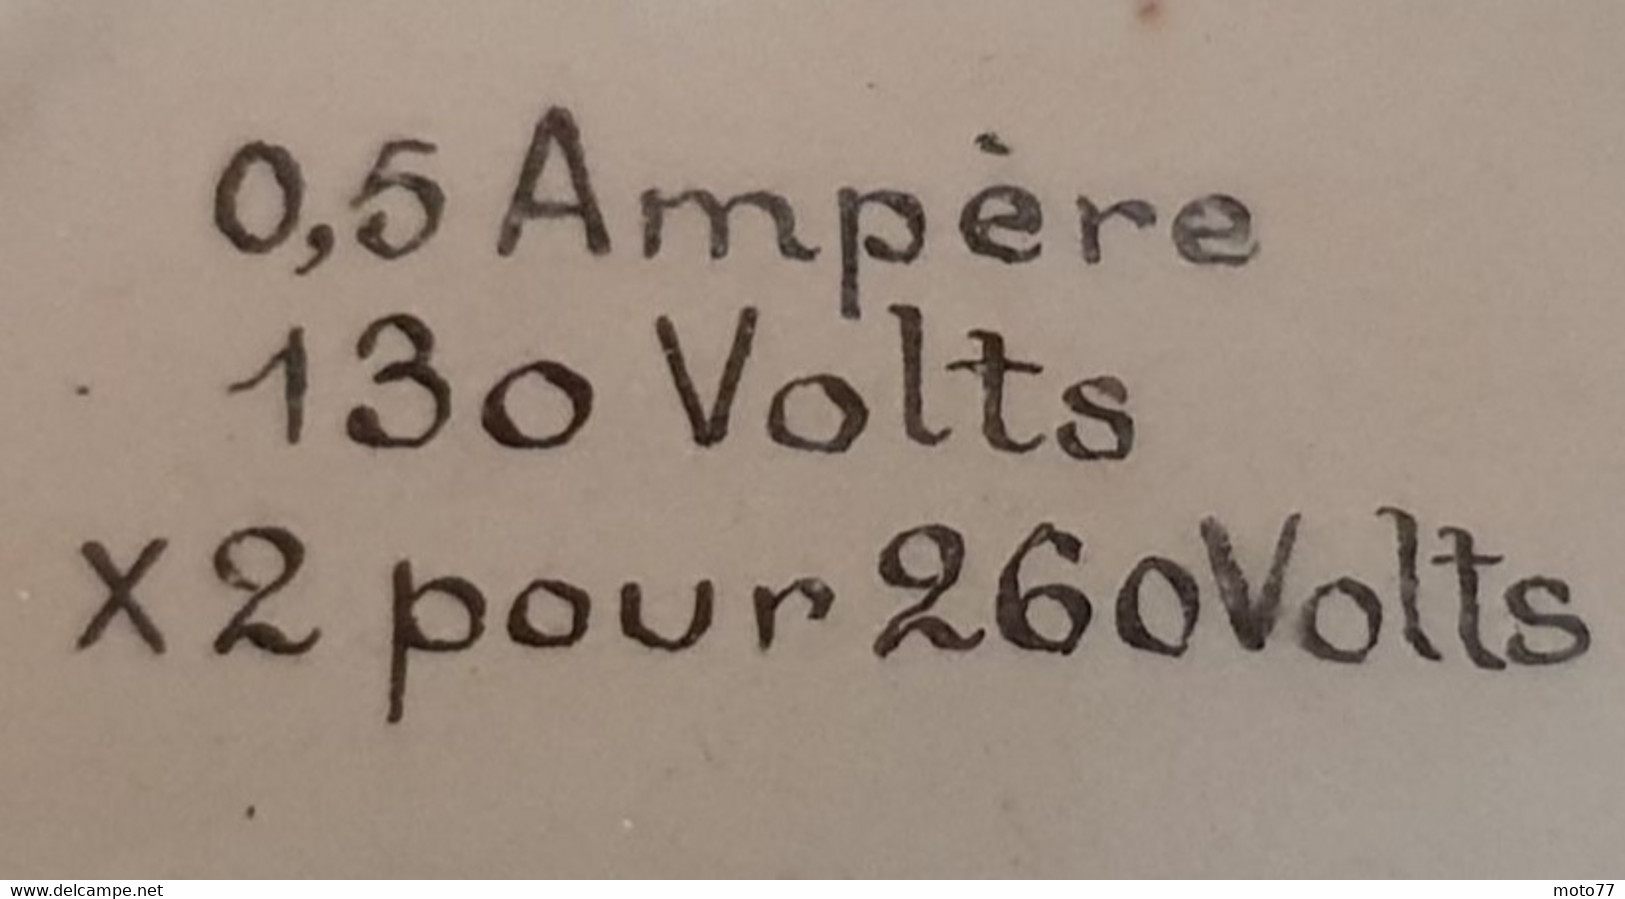 Ancien APPAREIL ÉLECTRIQUE WATTMÈTRE de 0 à 65 watts - Bois Laiton Métal Fil coton - vers 1900 1920